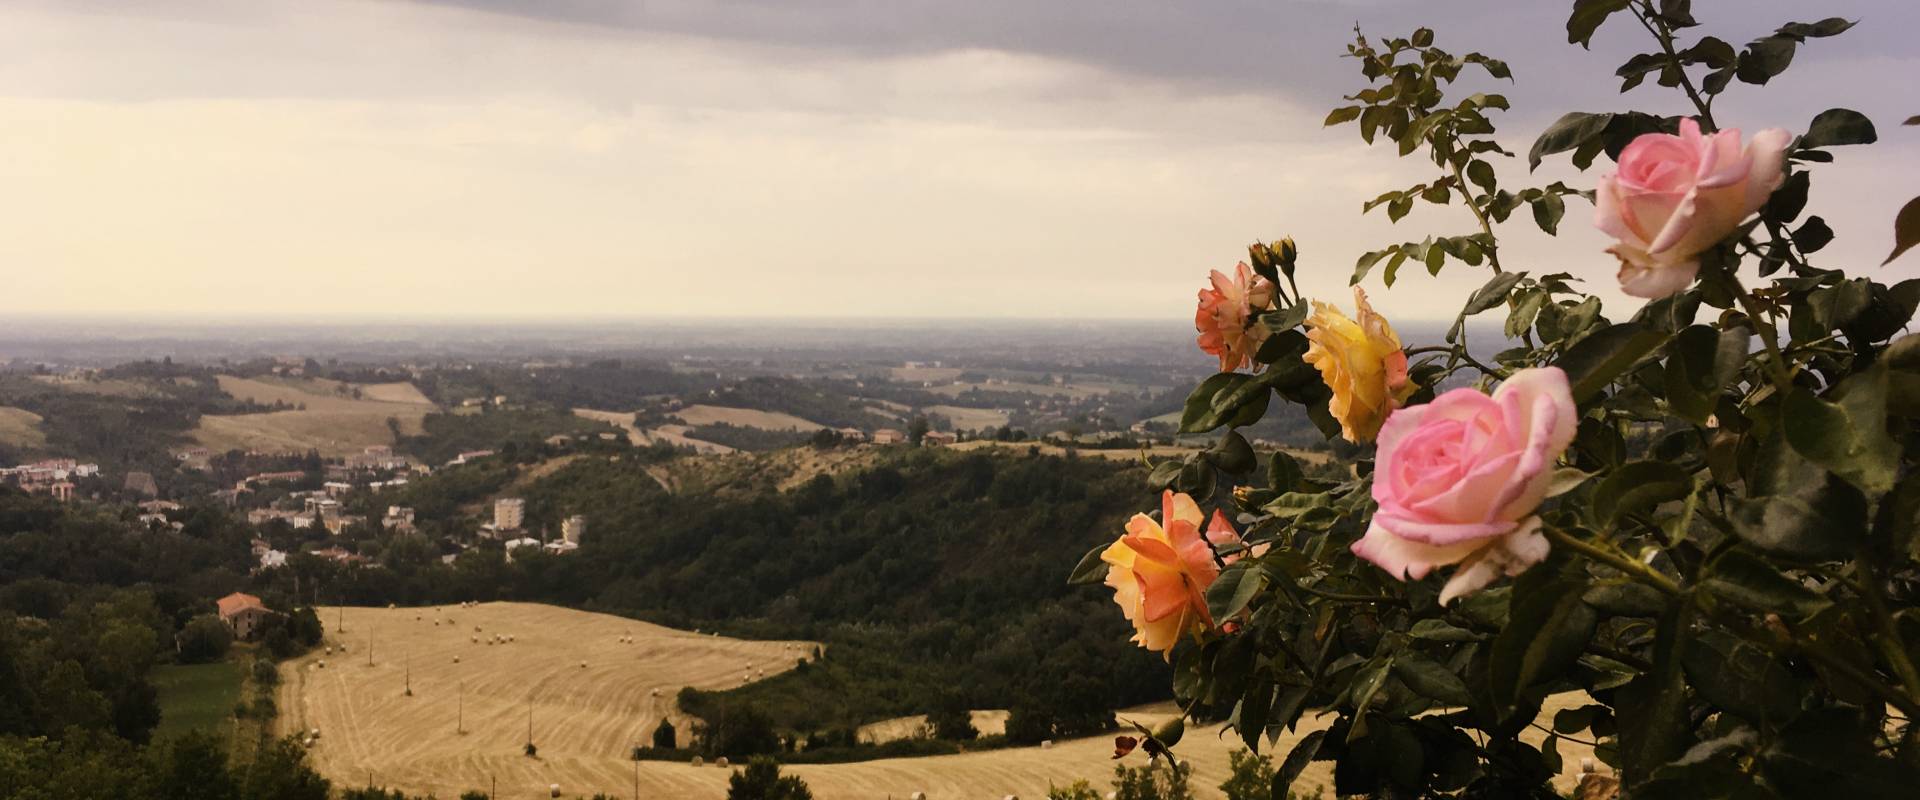 Il roseto sulle terrazze panoramiche foto di Castello di Tabiano